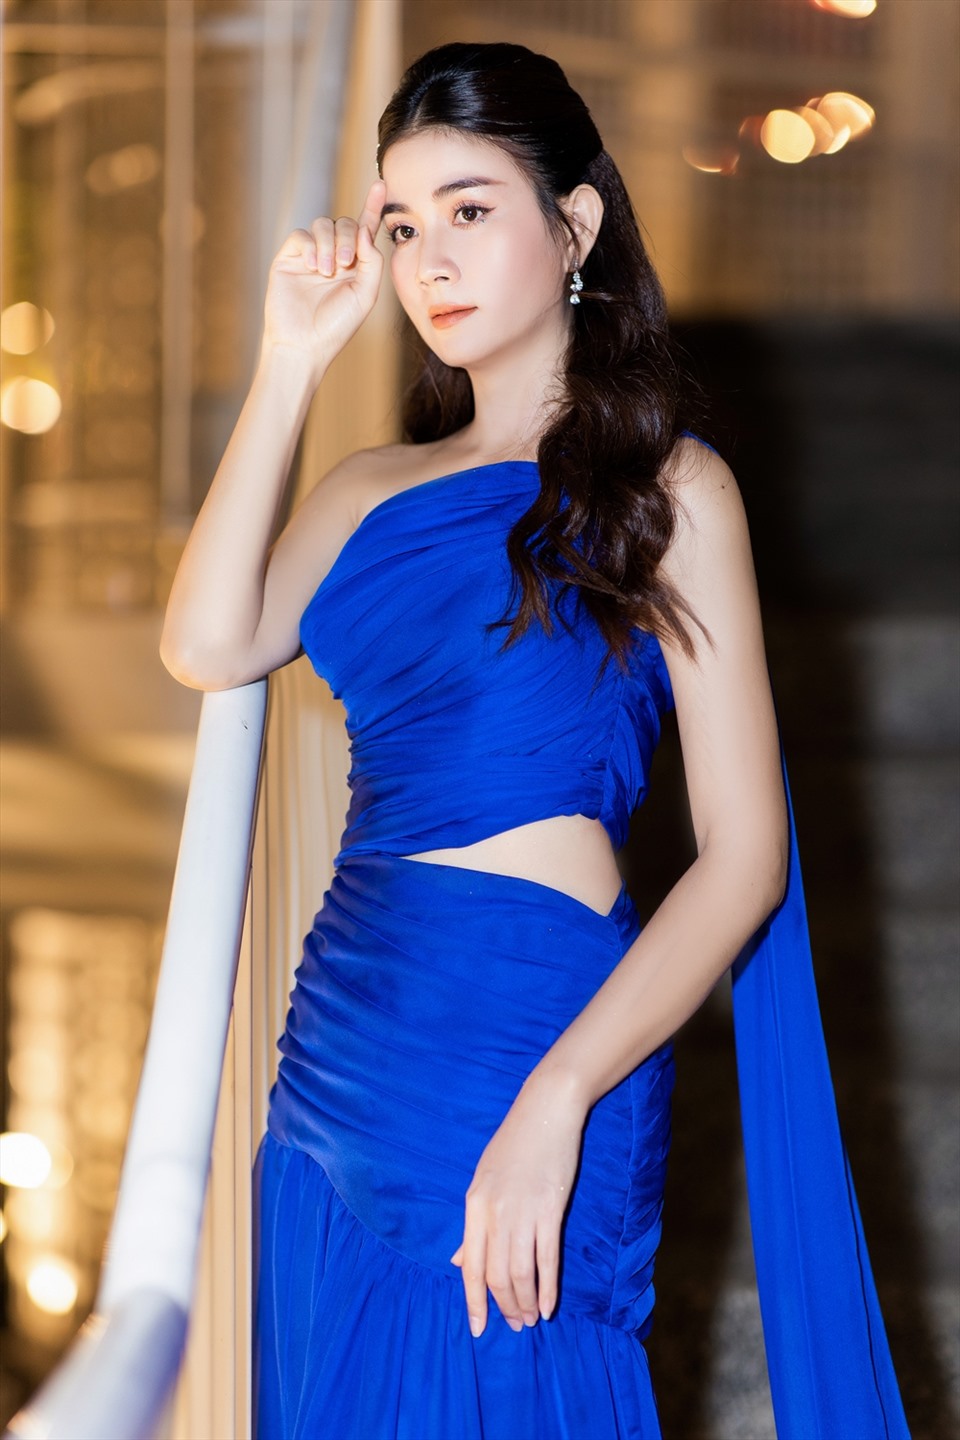 Cụ thể, Kha Ly chọn thiết kế váy xanh lệch vai, với điểm nhấn là chi tiết cắt xẻ ở phần chân váy, giúp cô khoe vẻ ngoài gợi cảm. Trong khi đó, Thanh Duy chọn vest đơn giản nhưng không kém phần sang trọng, lịch lãm.